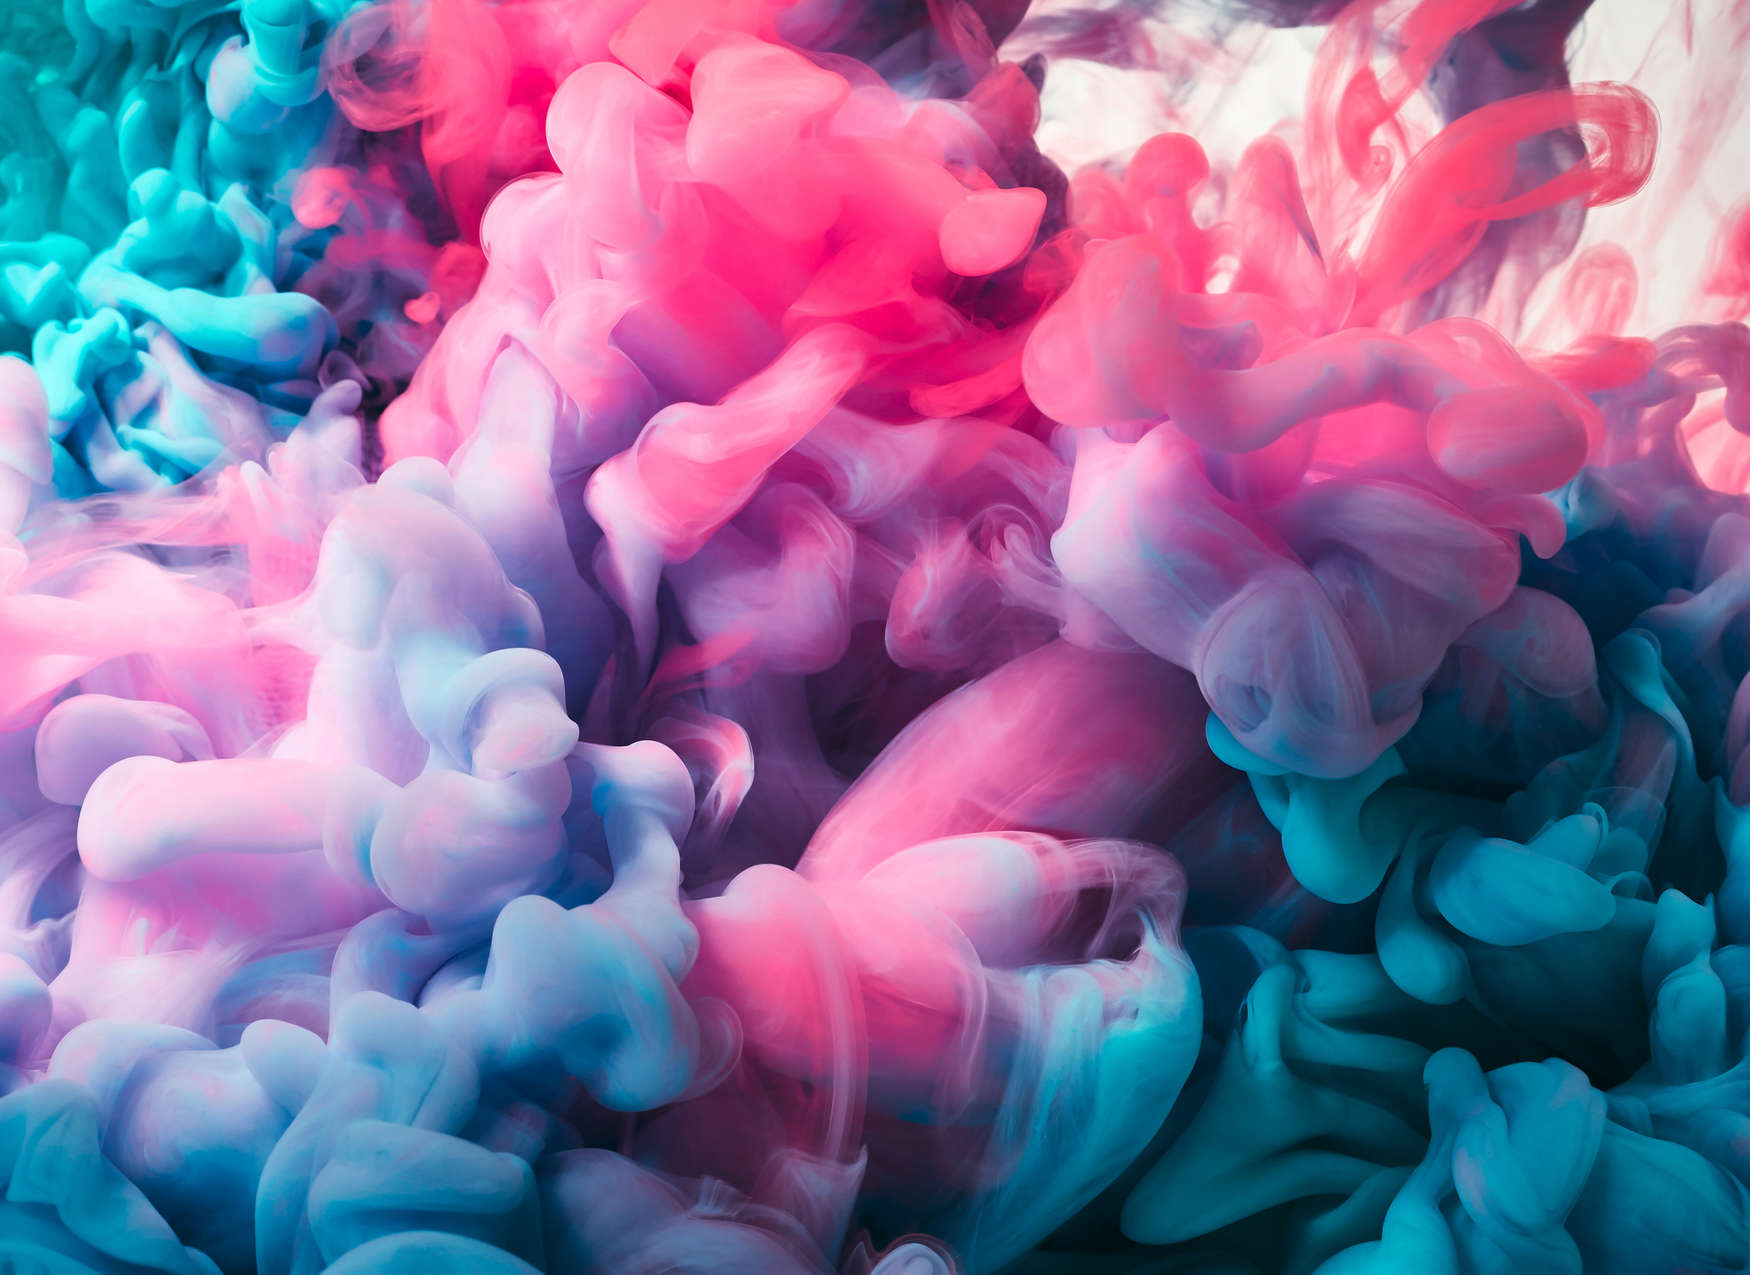             Gekleurd Rook Onderlaag behang - Roze, Blauw, Wit
        